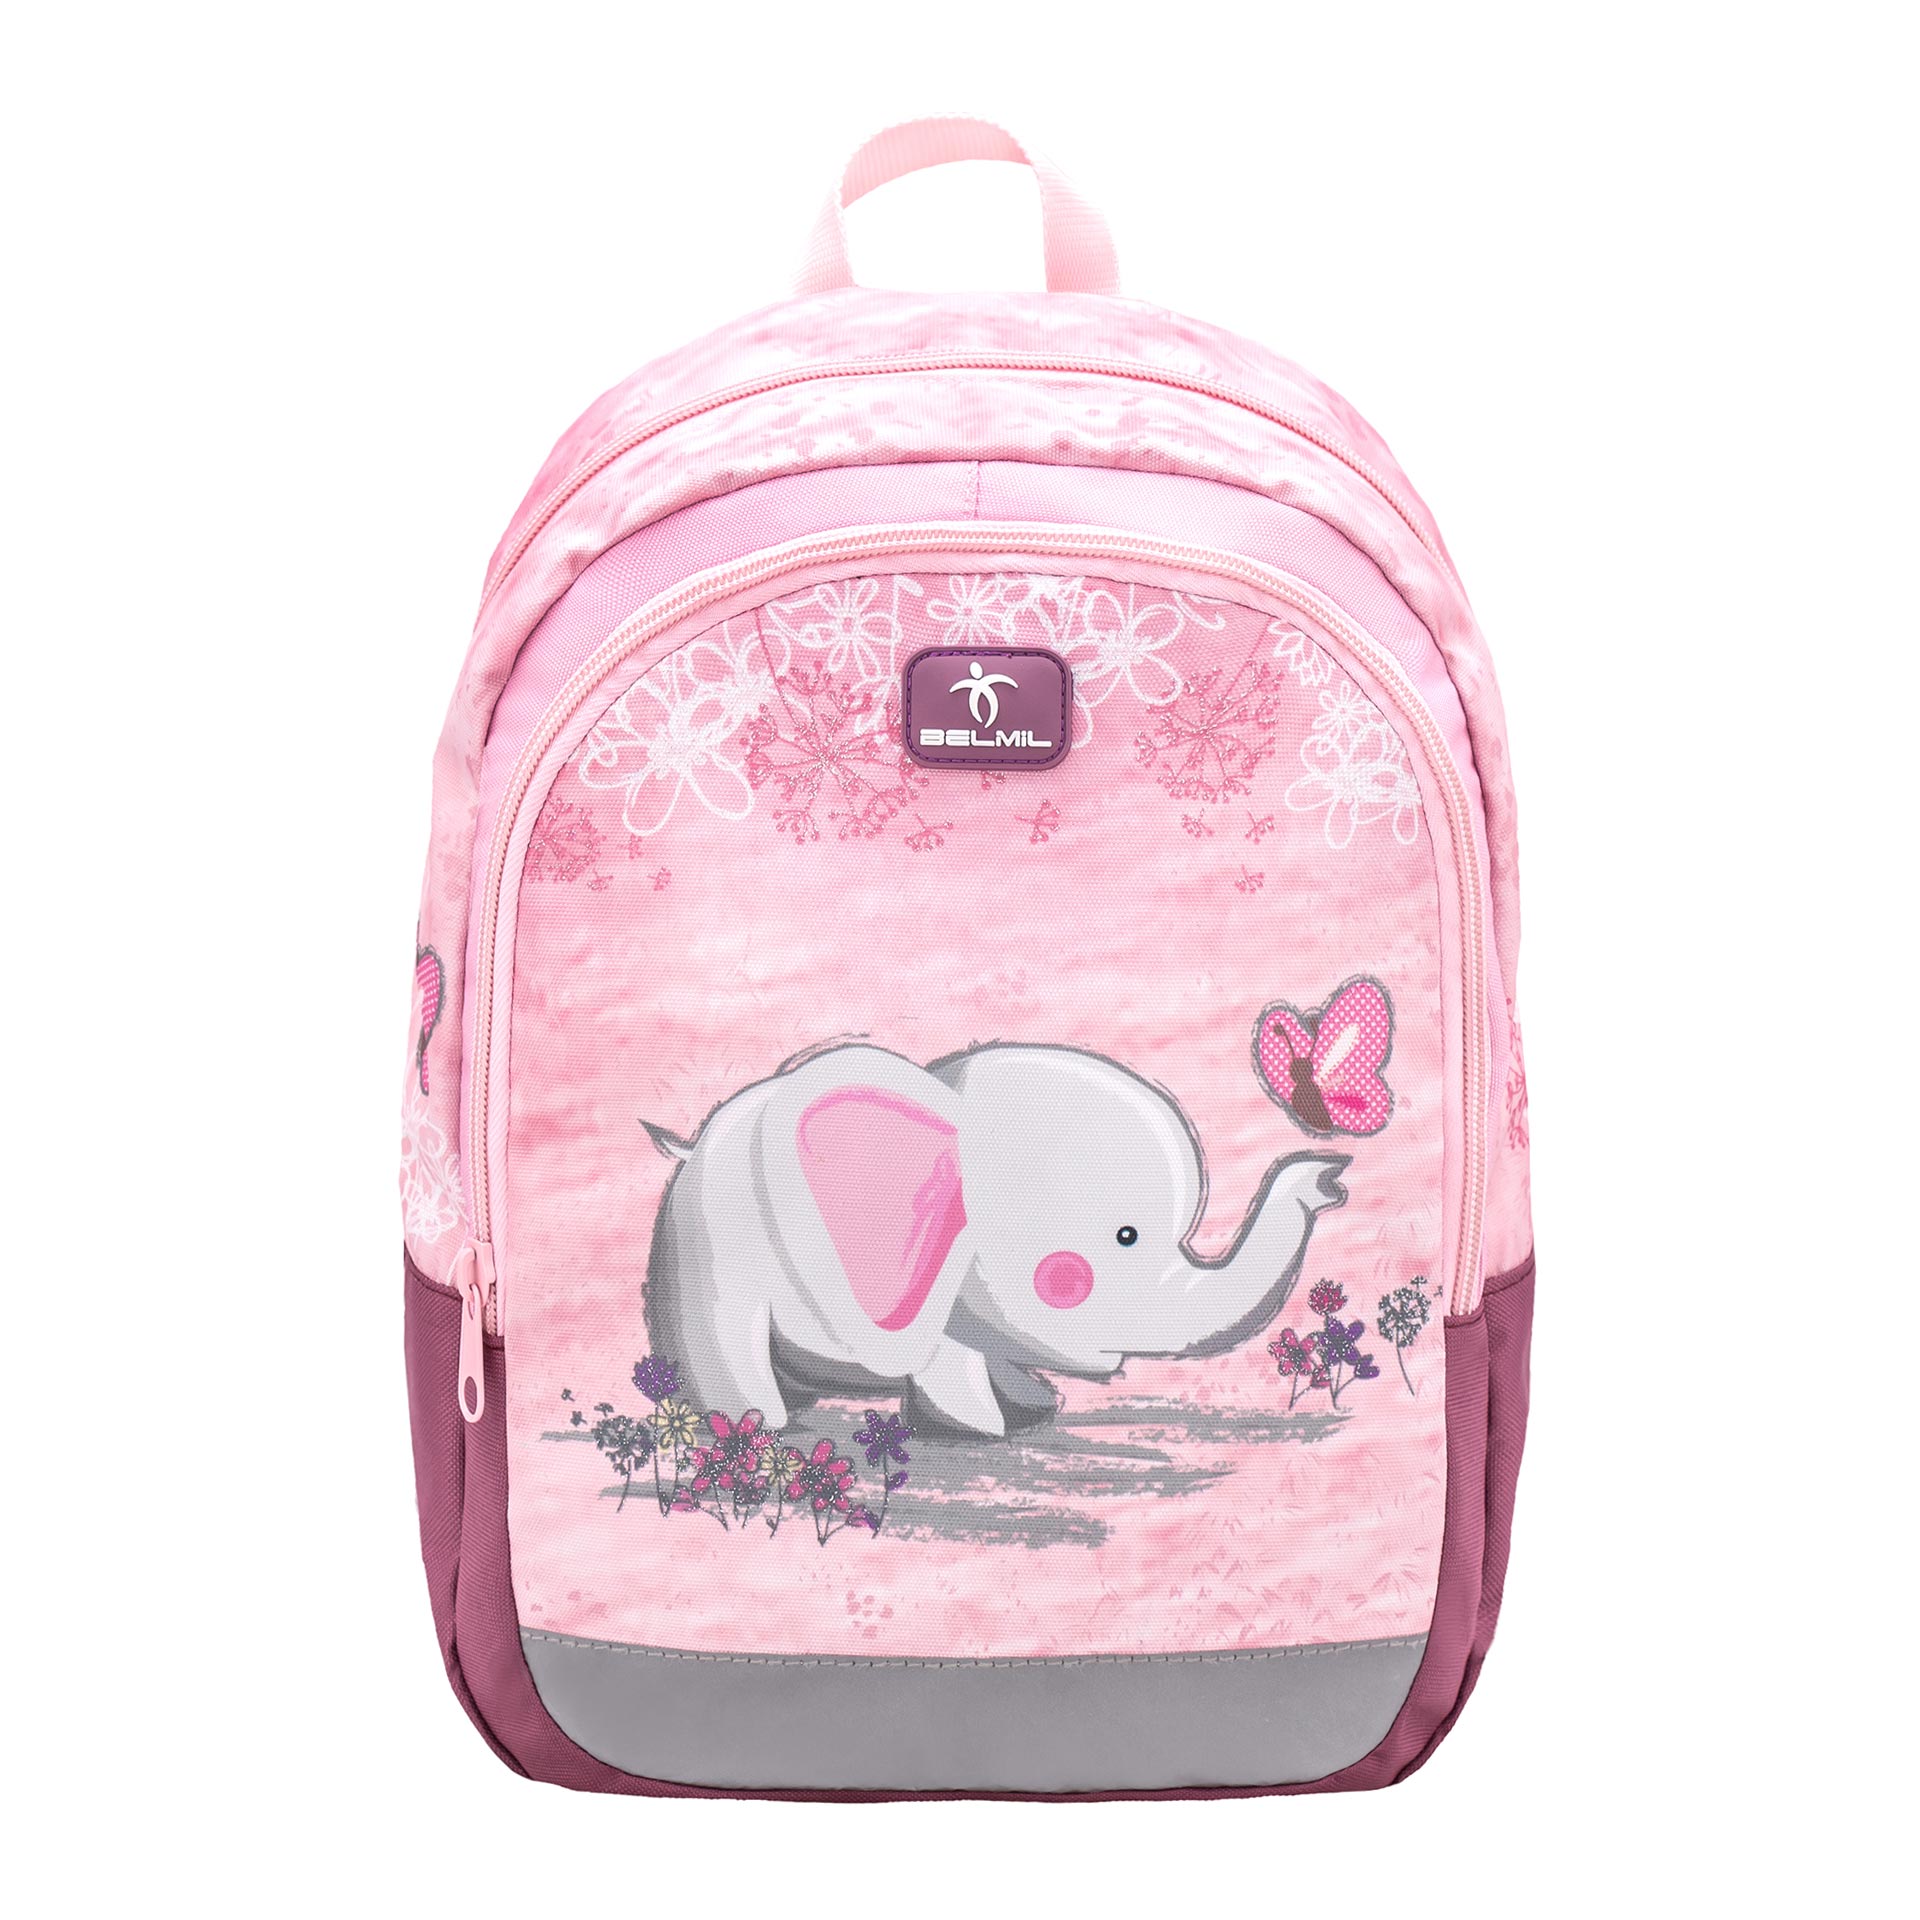 Belmil Kiddy Kinderrucksack Pink Elephant